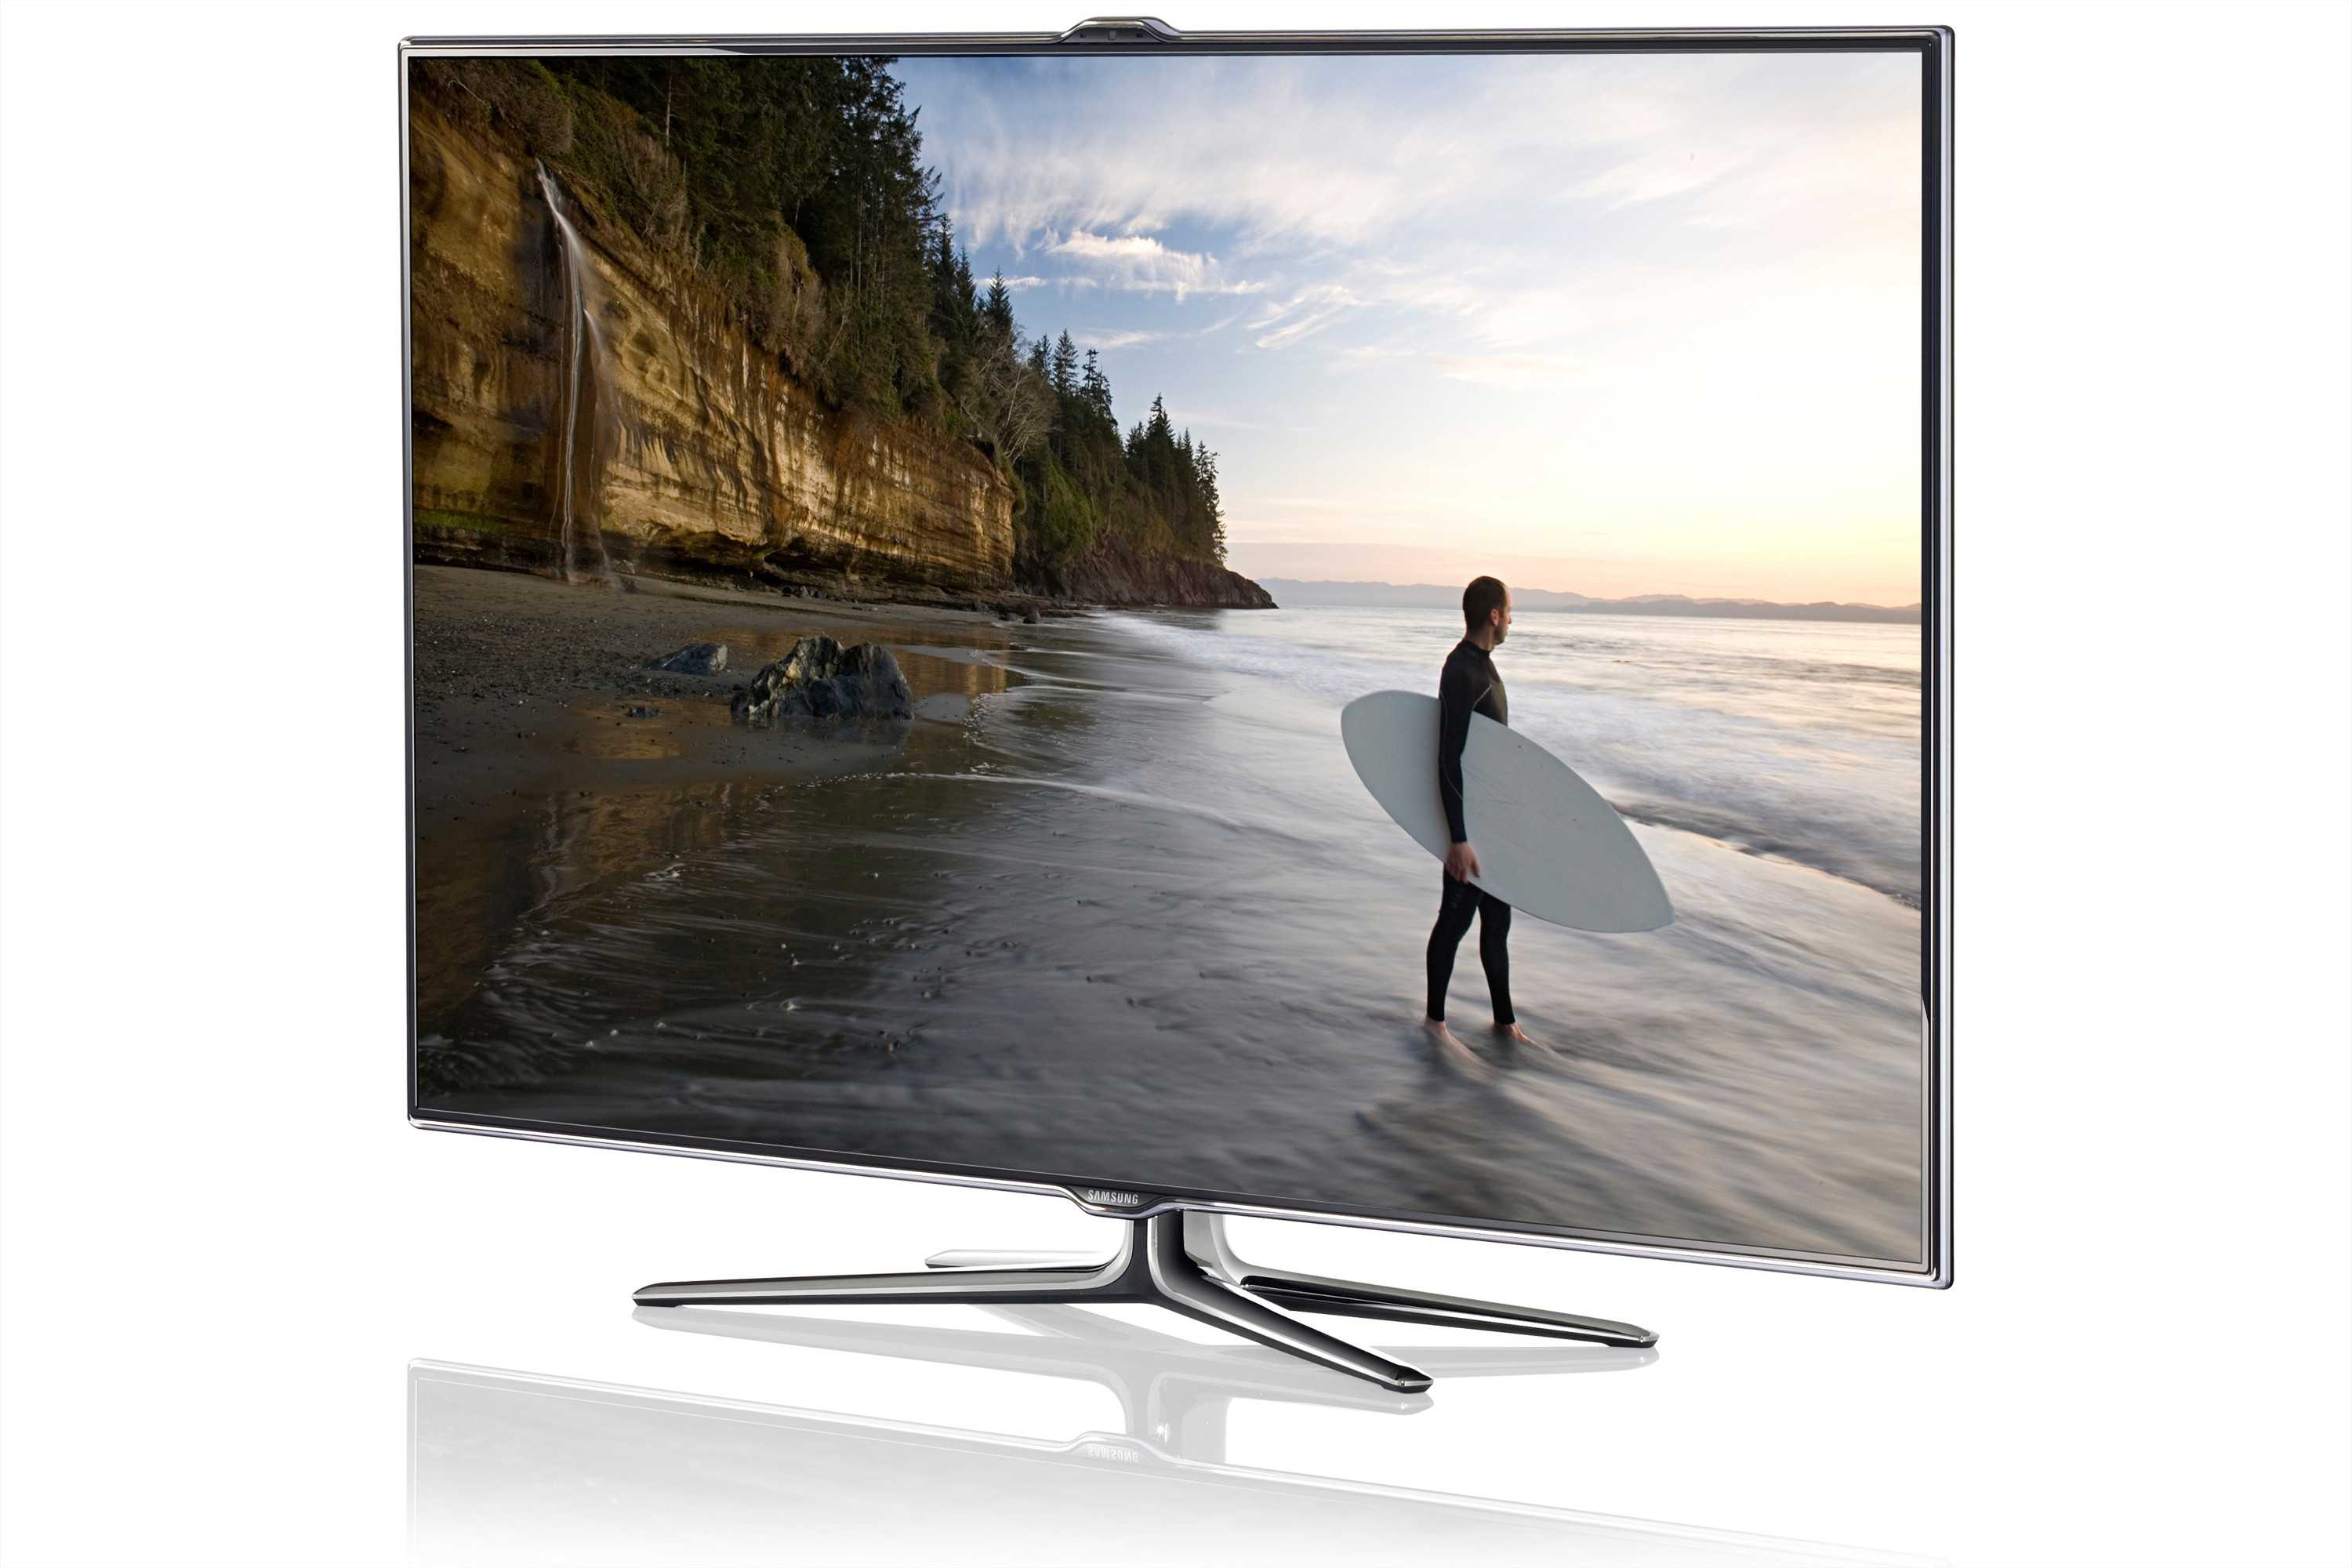 Samsung ue40mu6470u - купить , скидки, цена, отзывы, обзор, характеристики - телевизоры